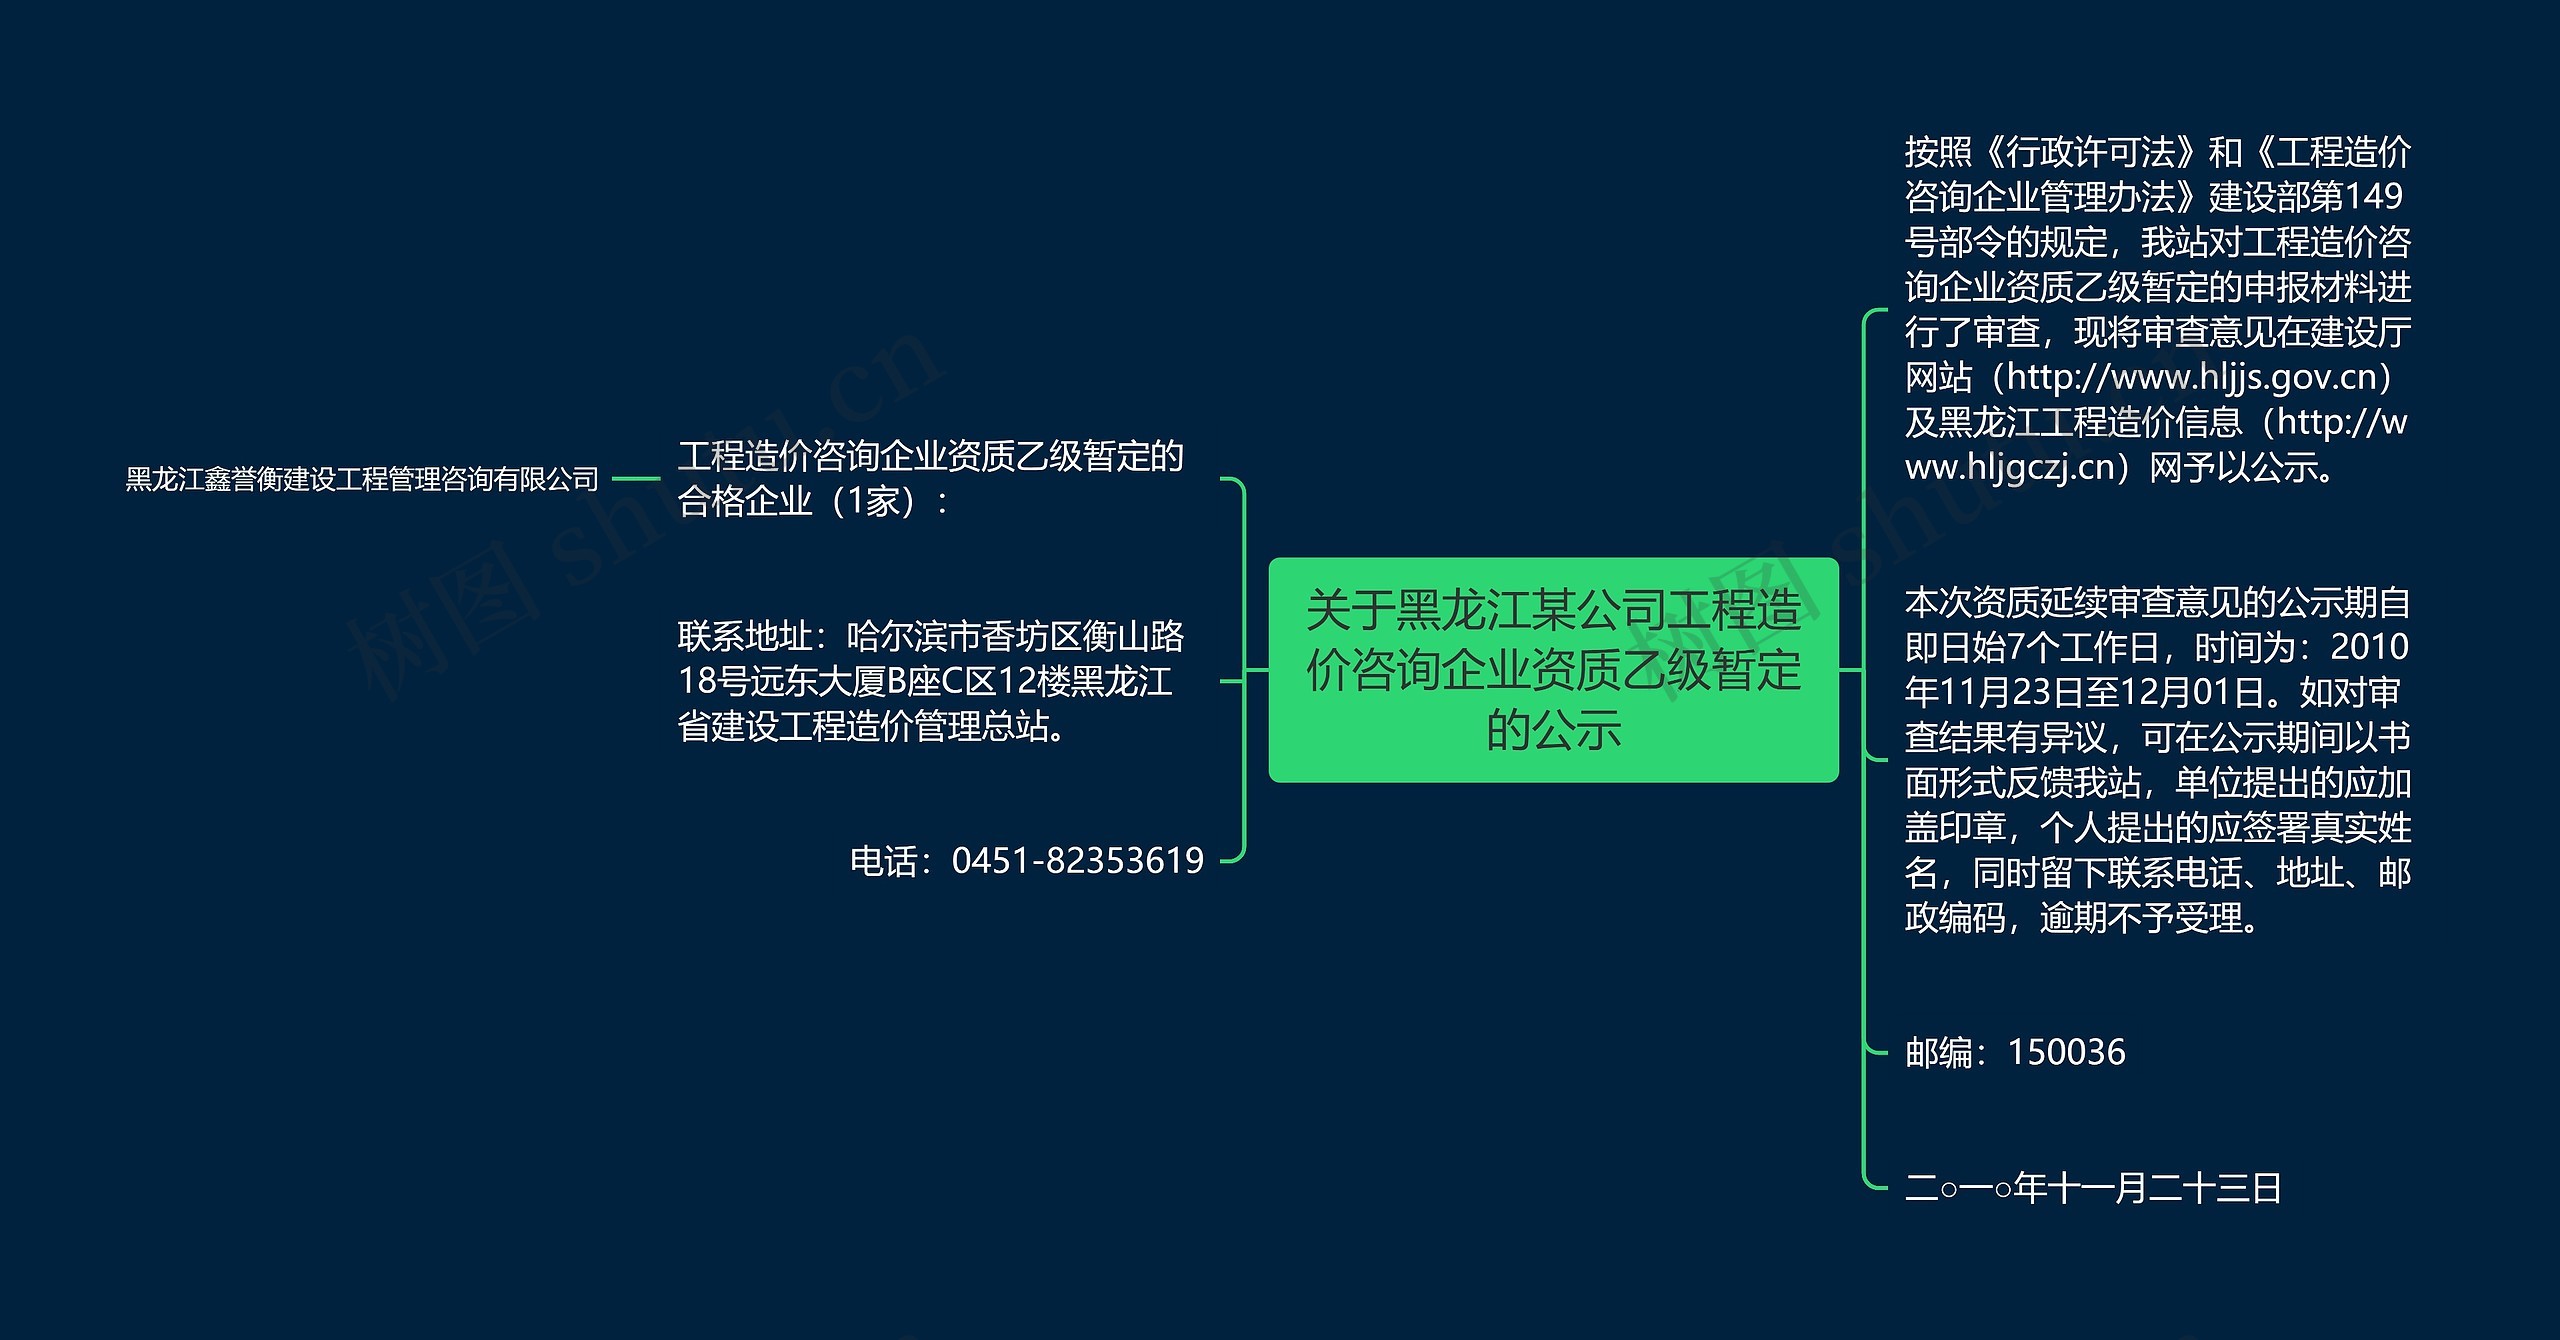 关于黑龙江某公司工程造价咨询企业资质乙级暂定的公示思维导图